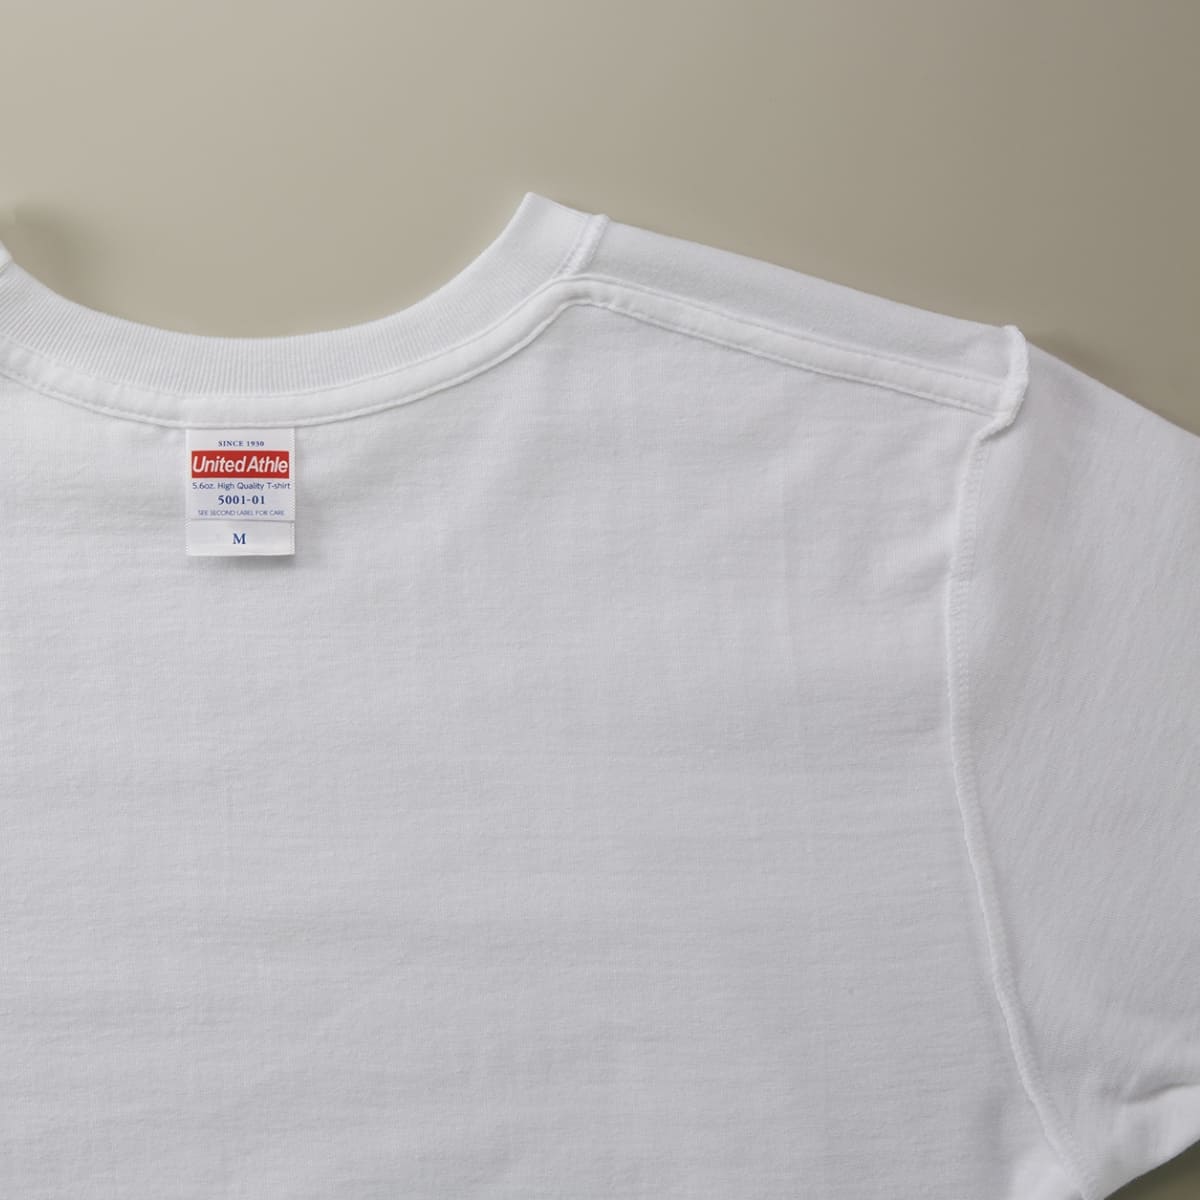 5.6オンス ハイクオリティーTシャツ | ビッグサイズ | 1枚 | 5001-01 | アプリコット